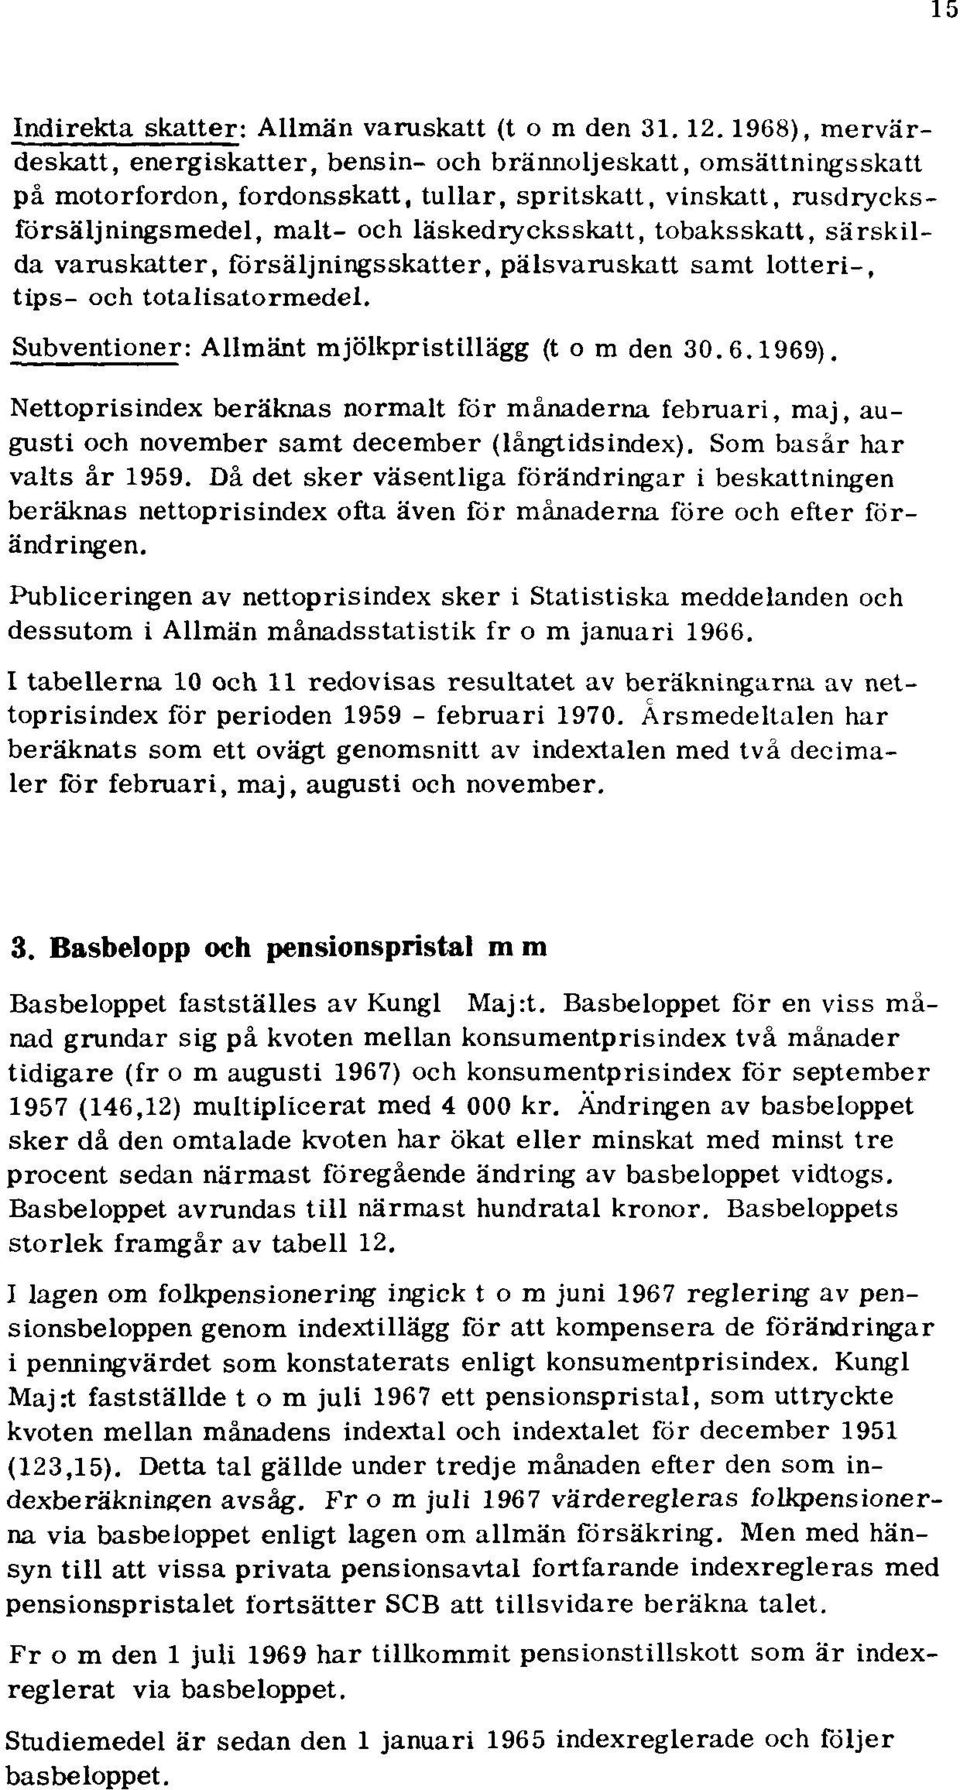 tobaksskatt, särskilda varuskatter, försäljningsskatter, pälsvaruskatt samt lotteri-, tips- och totalisatormedel. Subventioner: Allmänt mjölkpristillägg (tom den 30.6.1969).